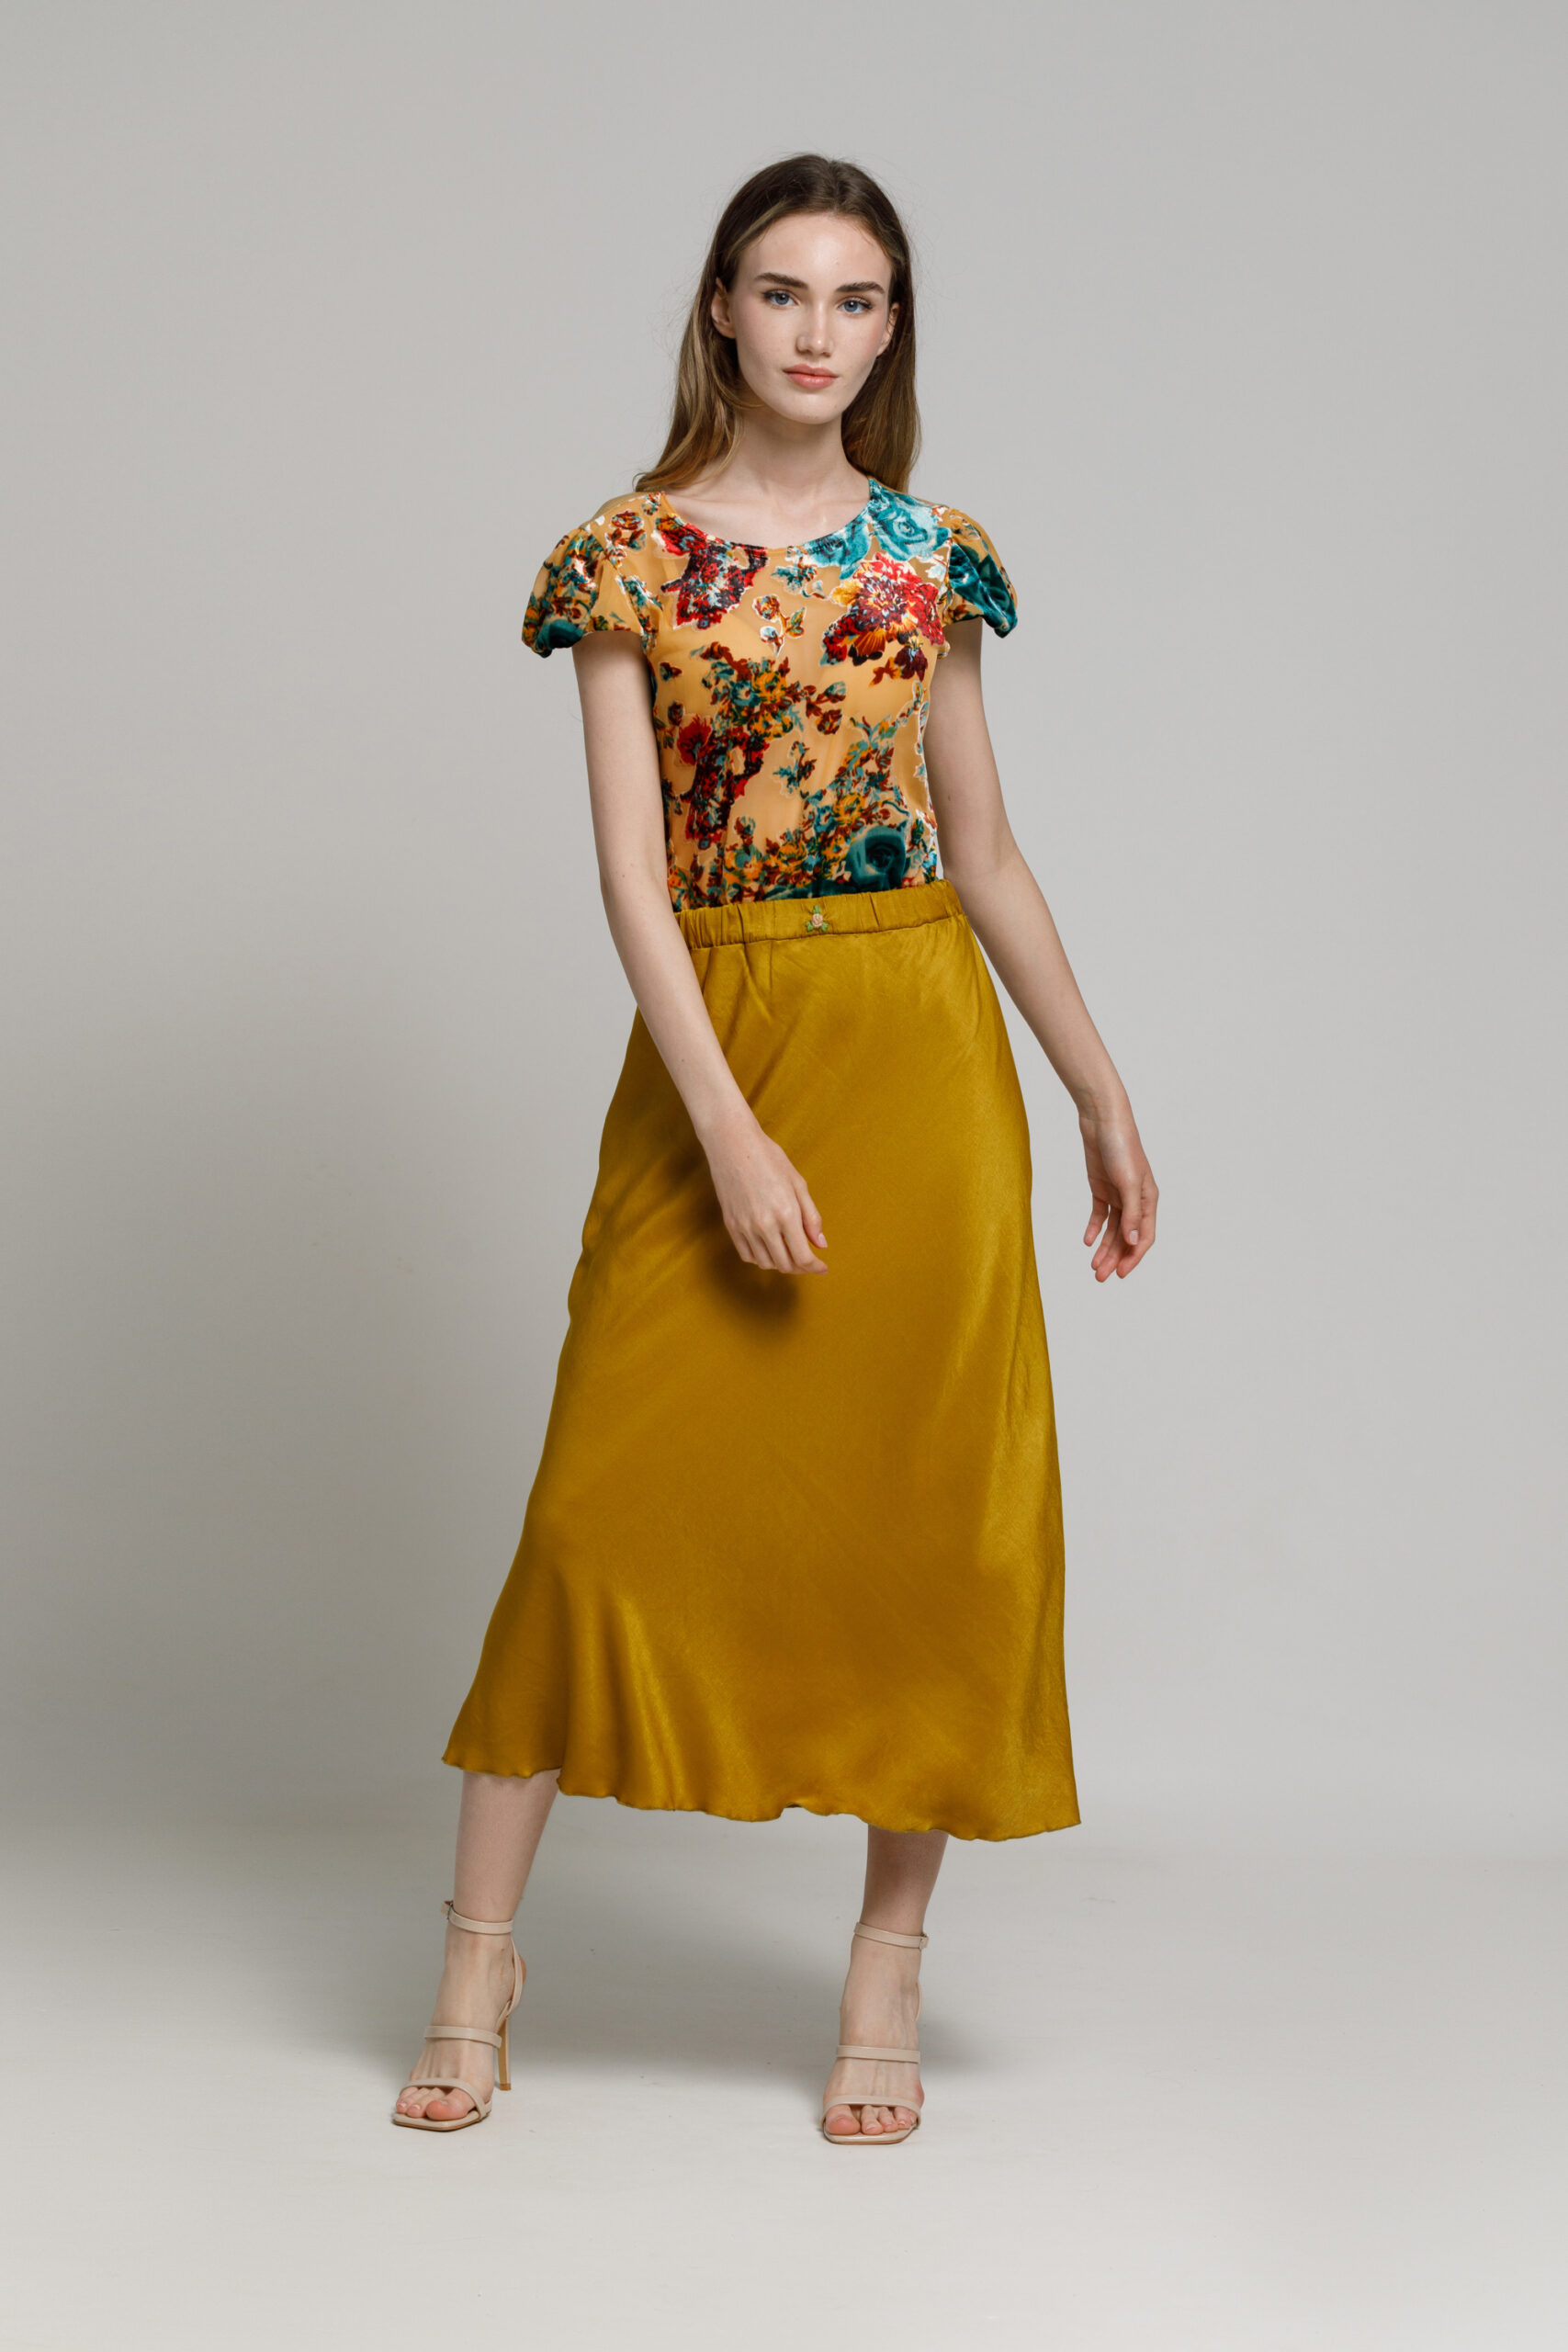 DORIA bronze-gold viscose skirt. Natural fabrics, original design, handmade embroidery